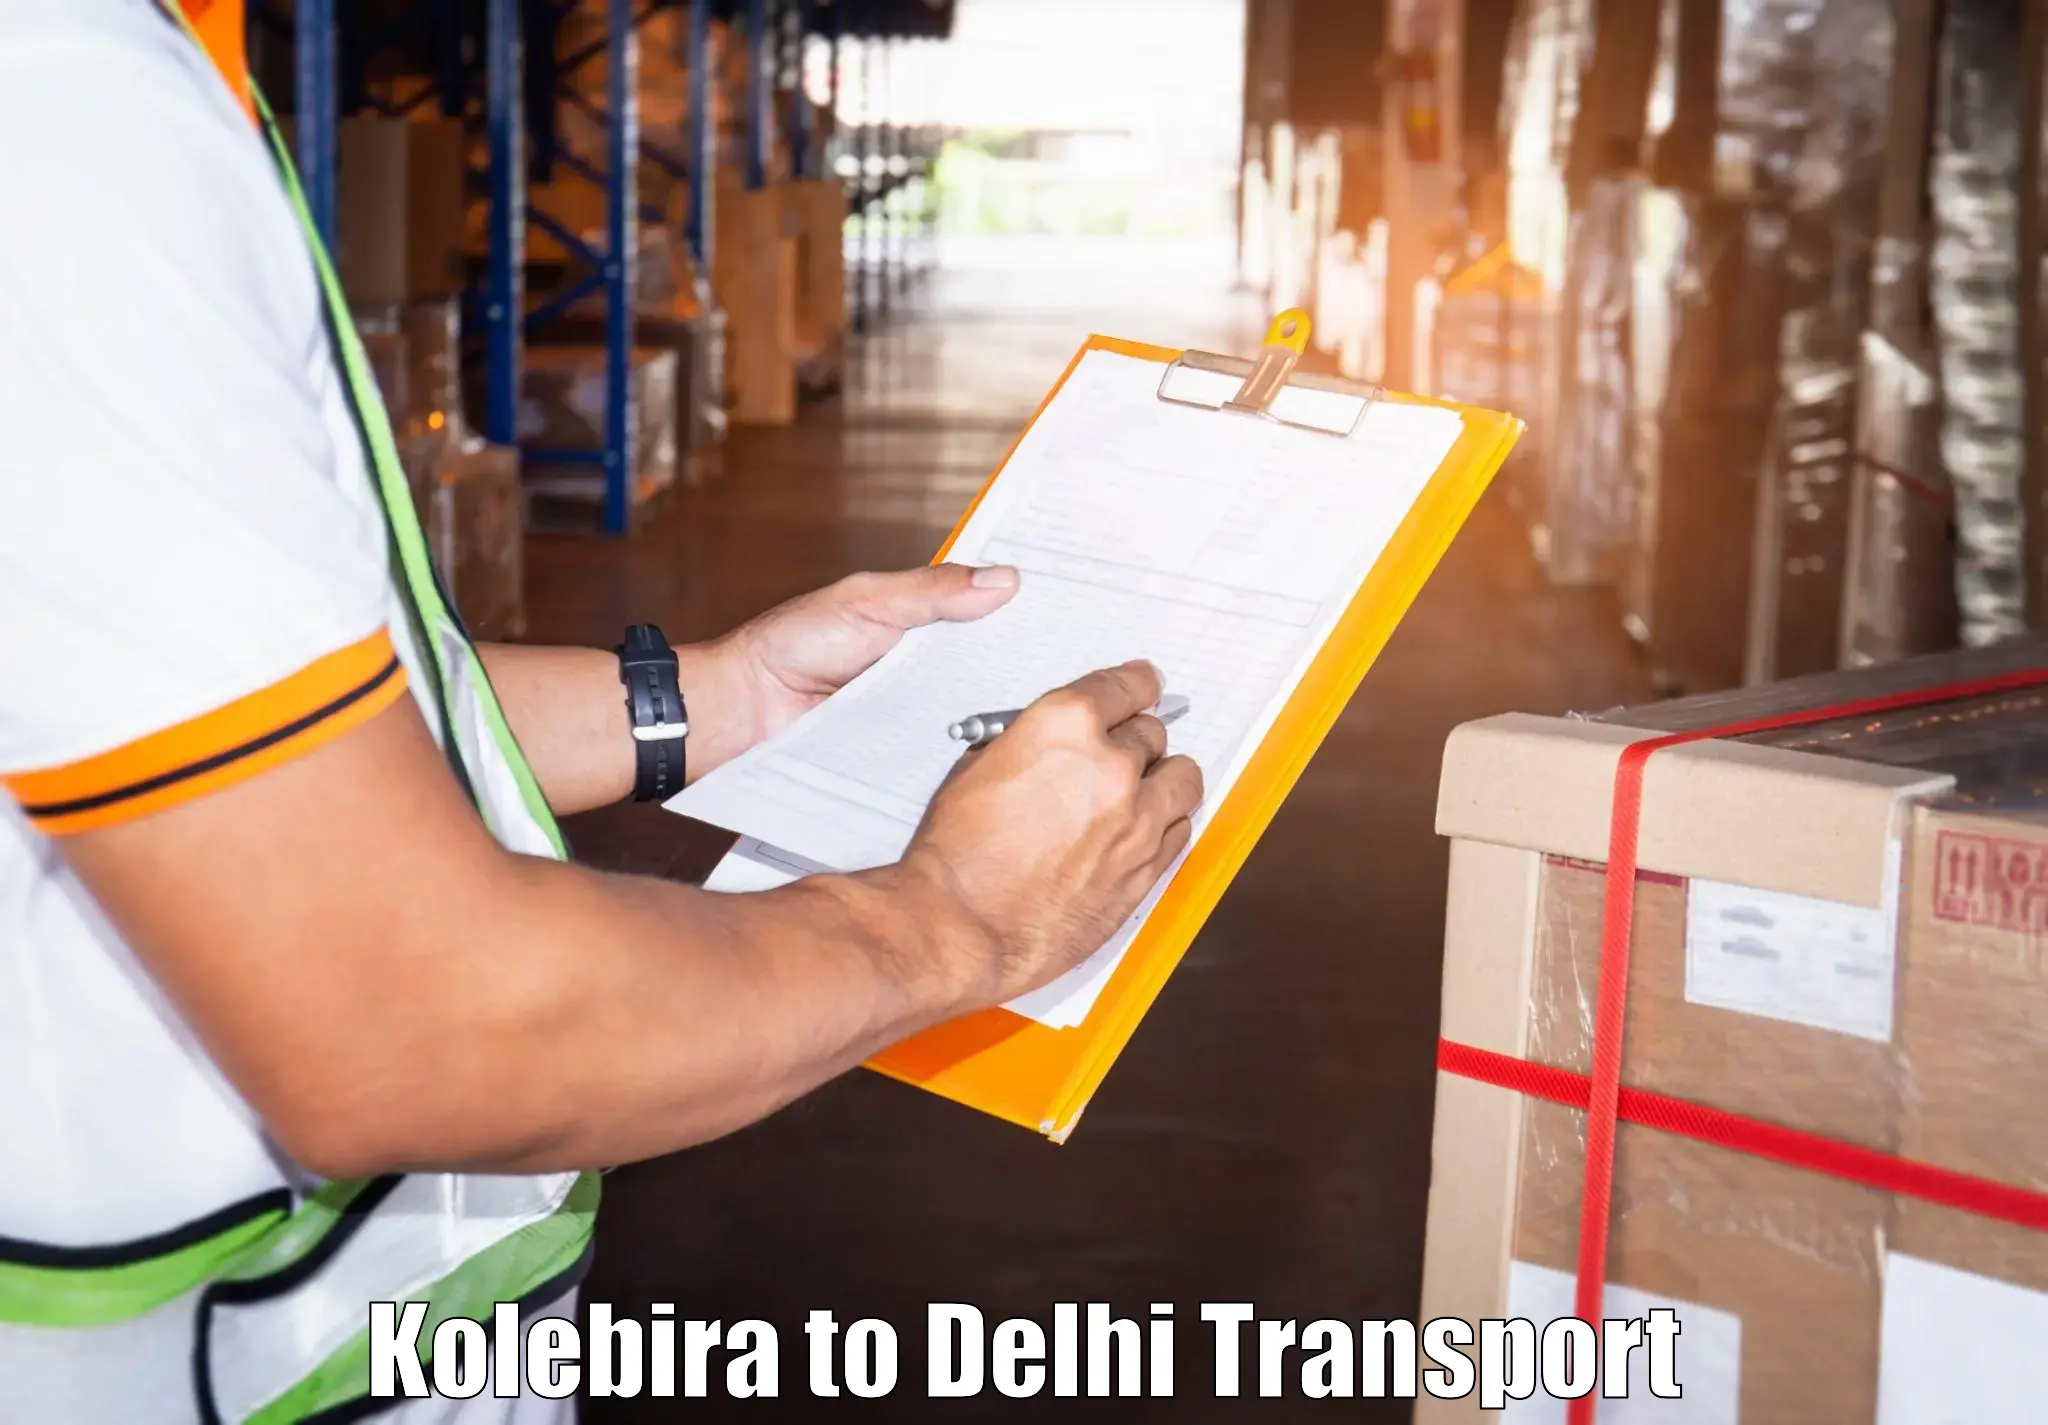 Two wheeler parcel service Kolebira to University of Delhi